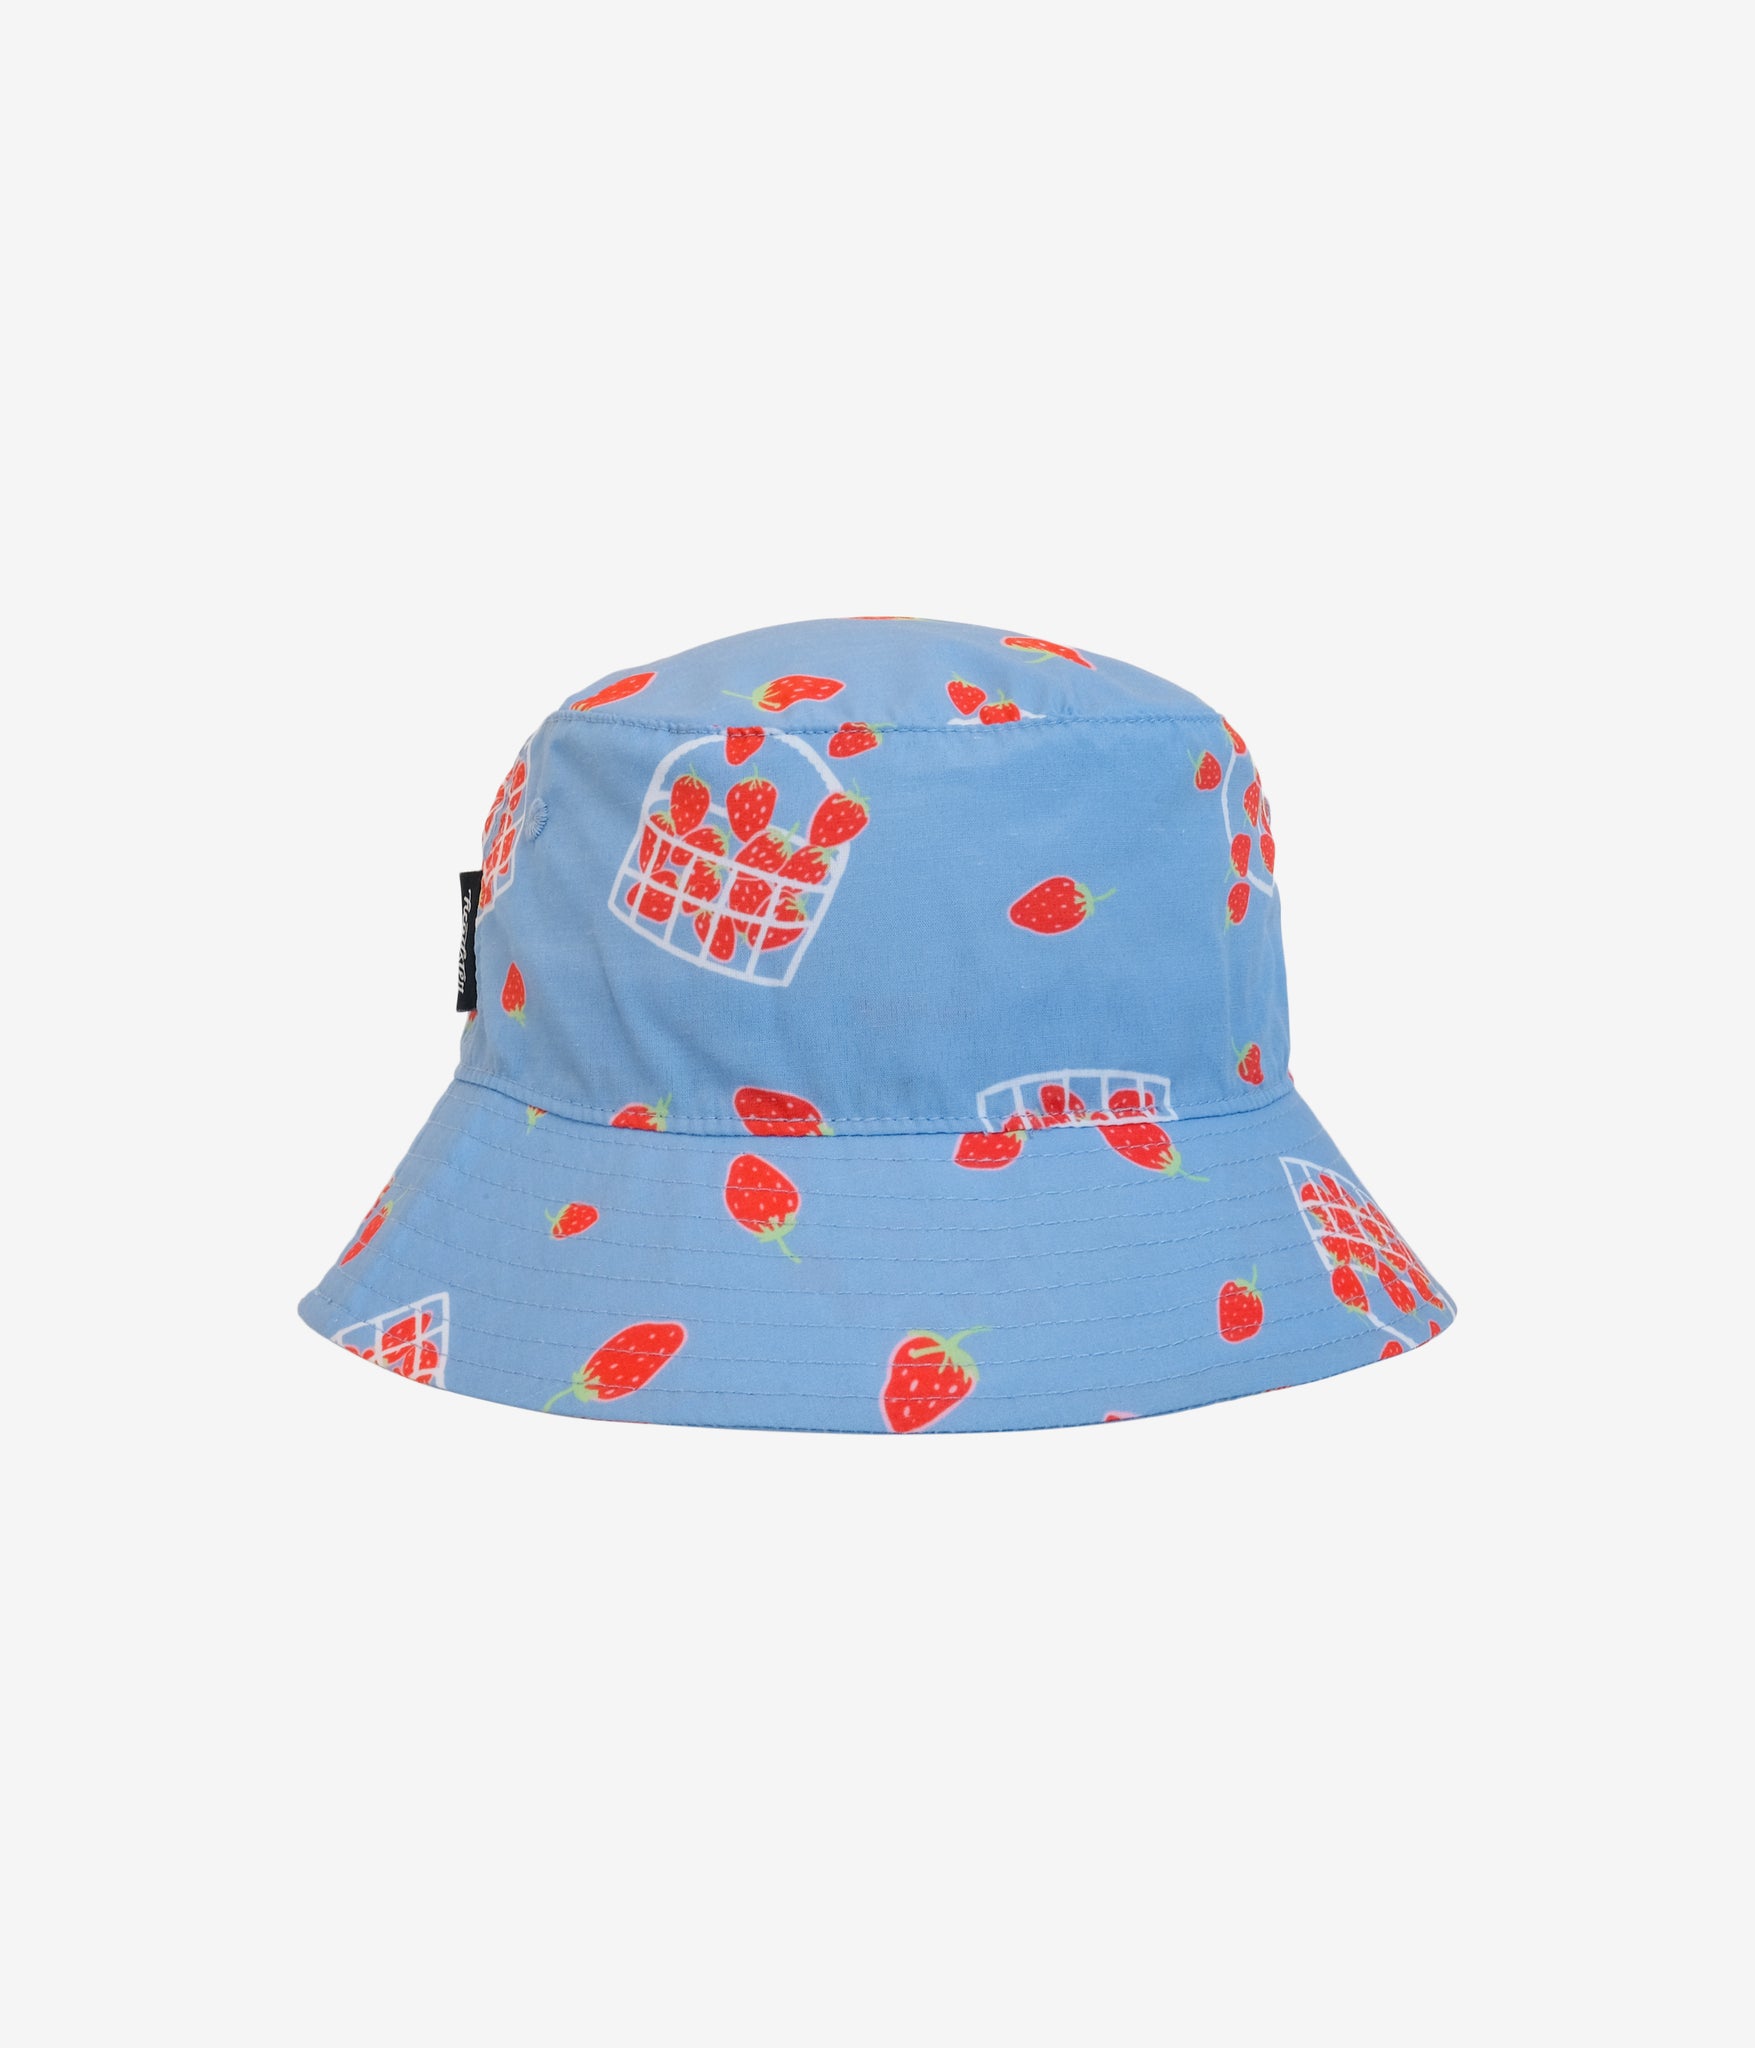 Strawberry Fields Bucket Hat